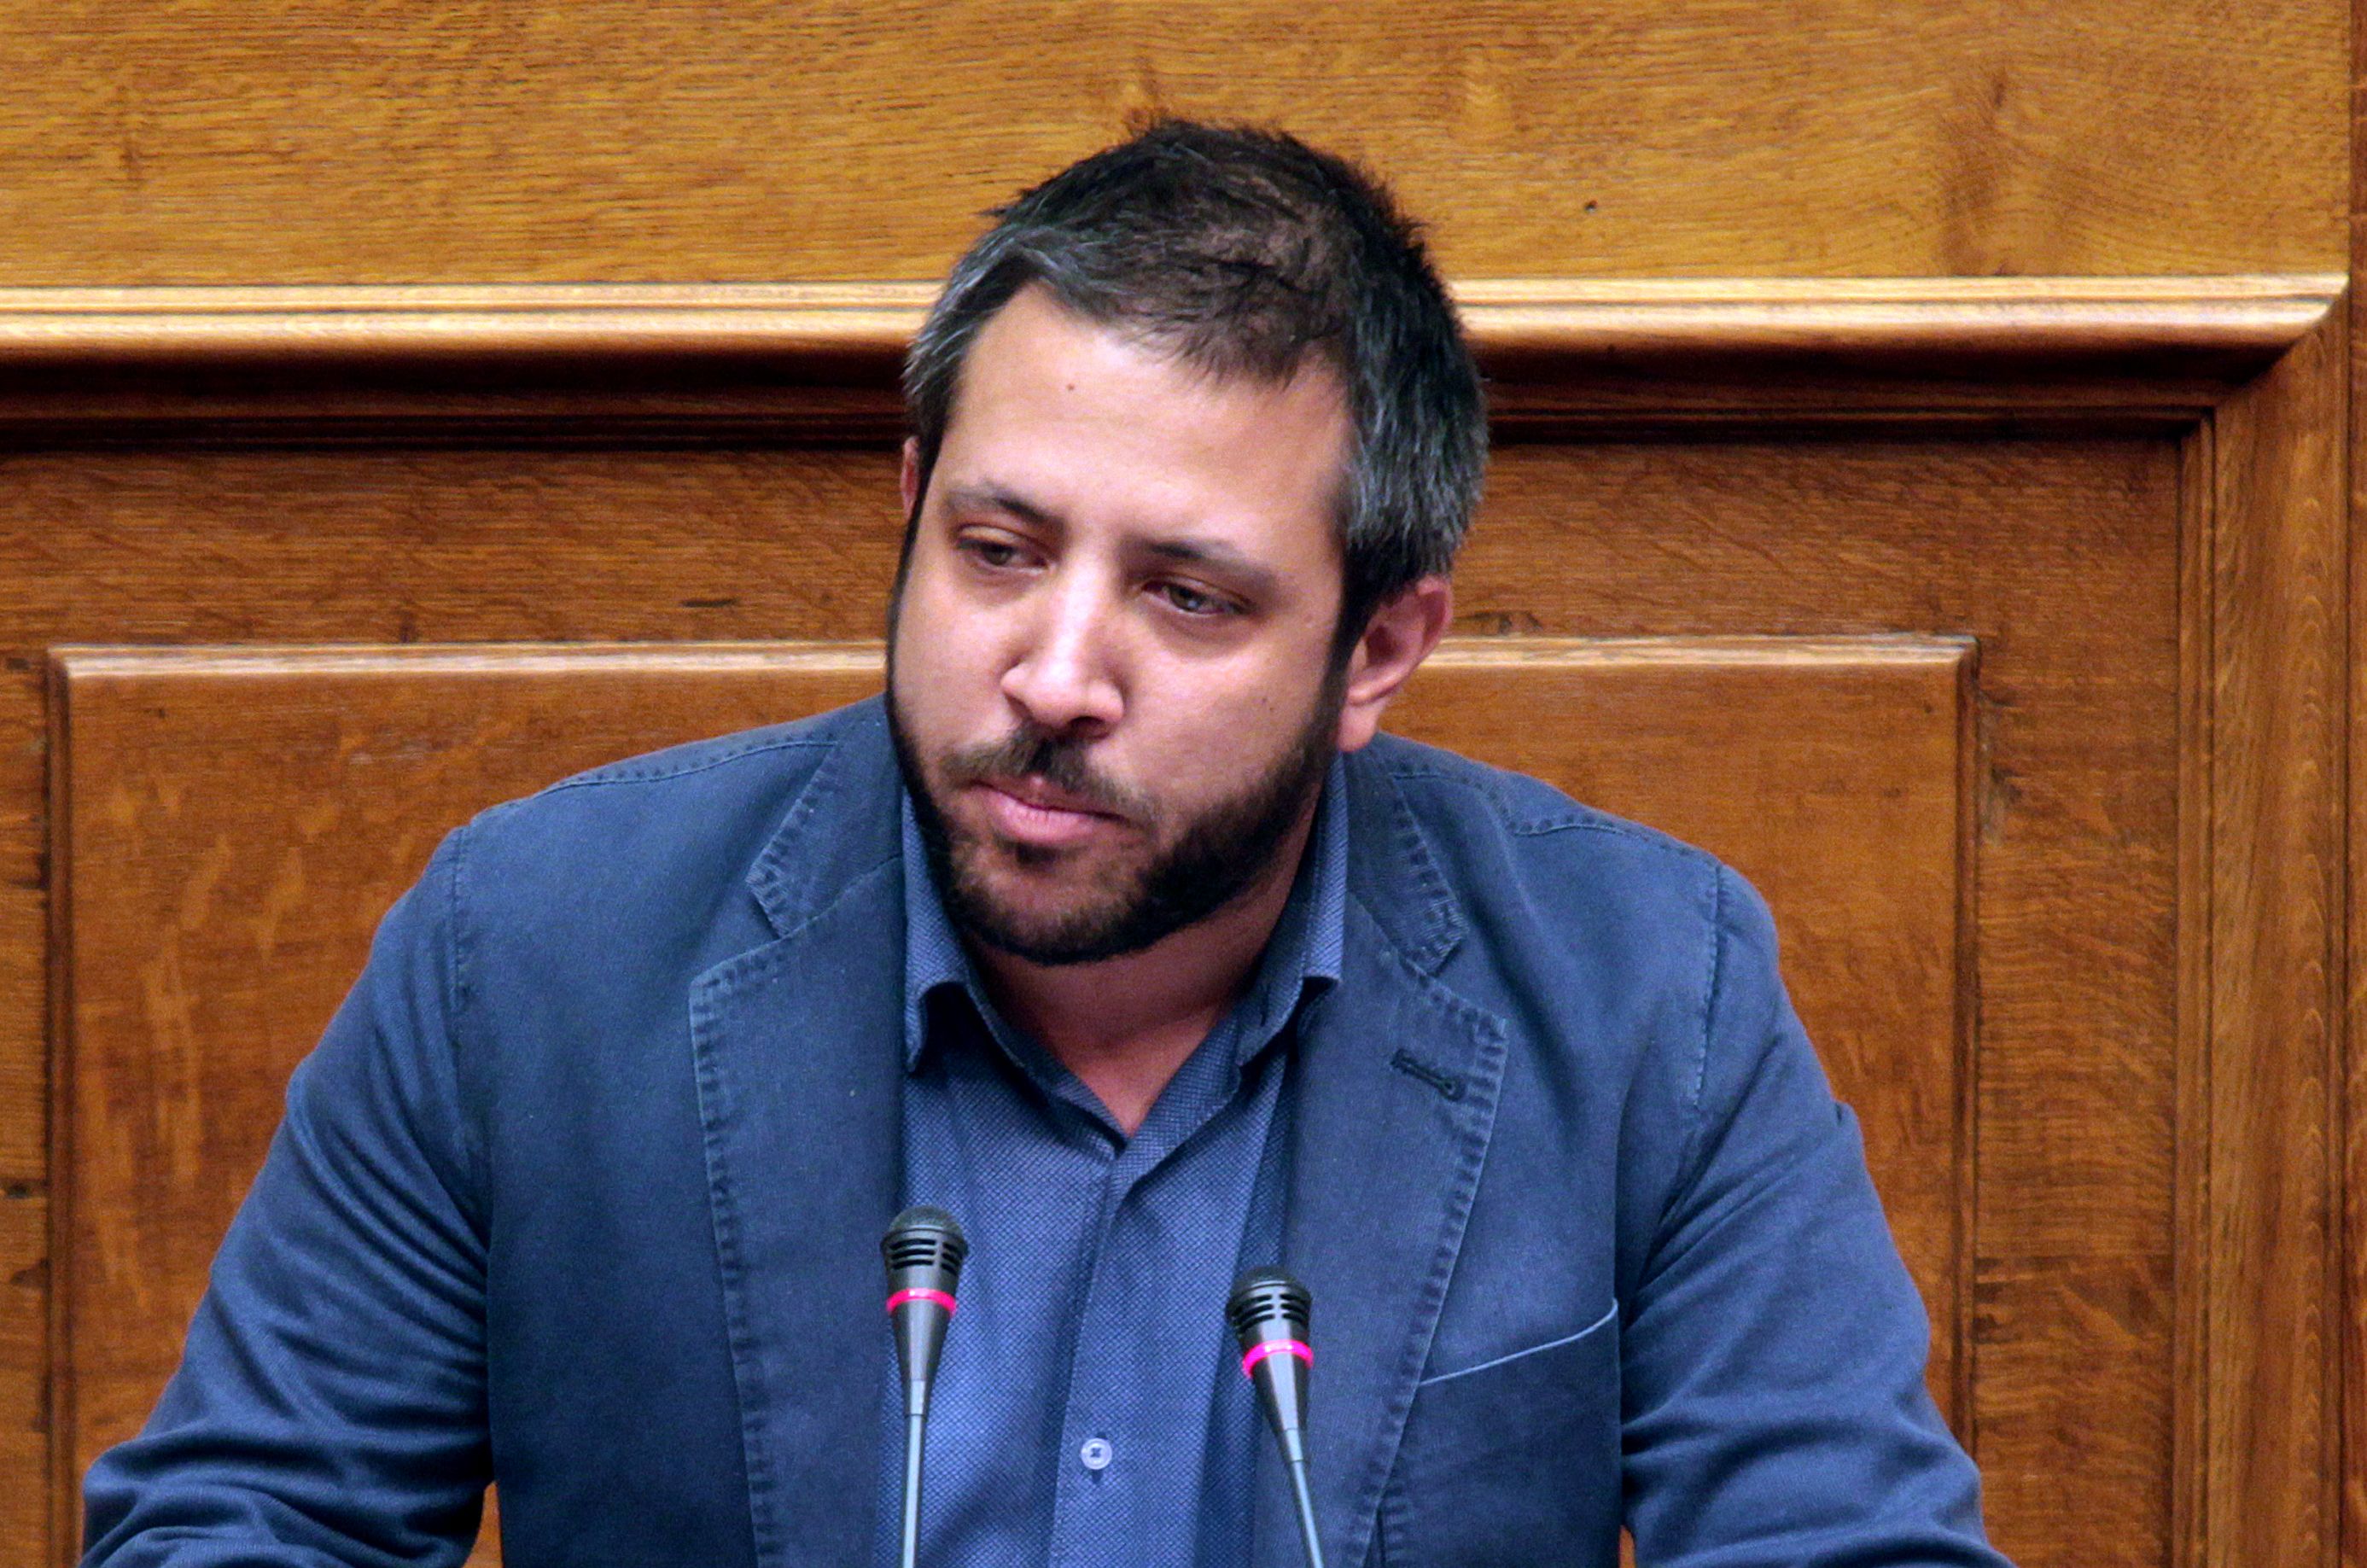 Ο Αλέξανδρος Μεϊκόπουλος για την κατάργηση της υποχρέωσης καταβολής του ειδικού παραβόλου για την αίτηση παροχής προνοιακών επιδομάτων στα άτομα με αναπηρία από τα ΚΕΠΑ